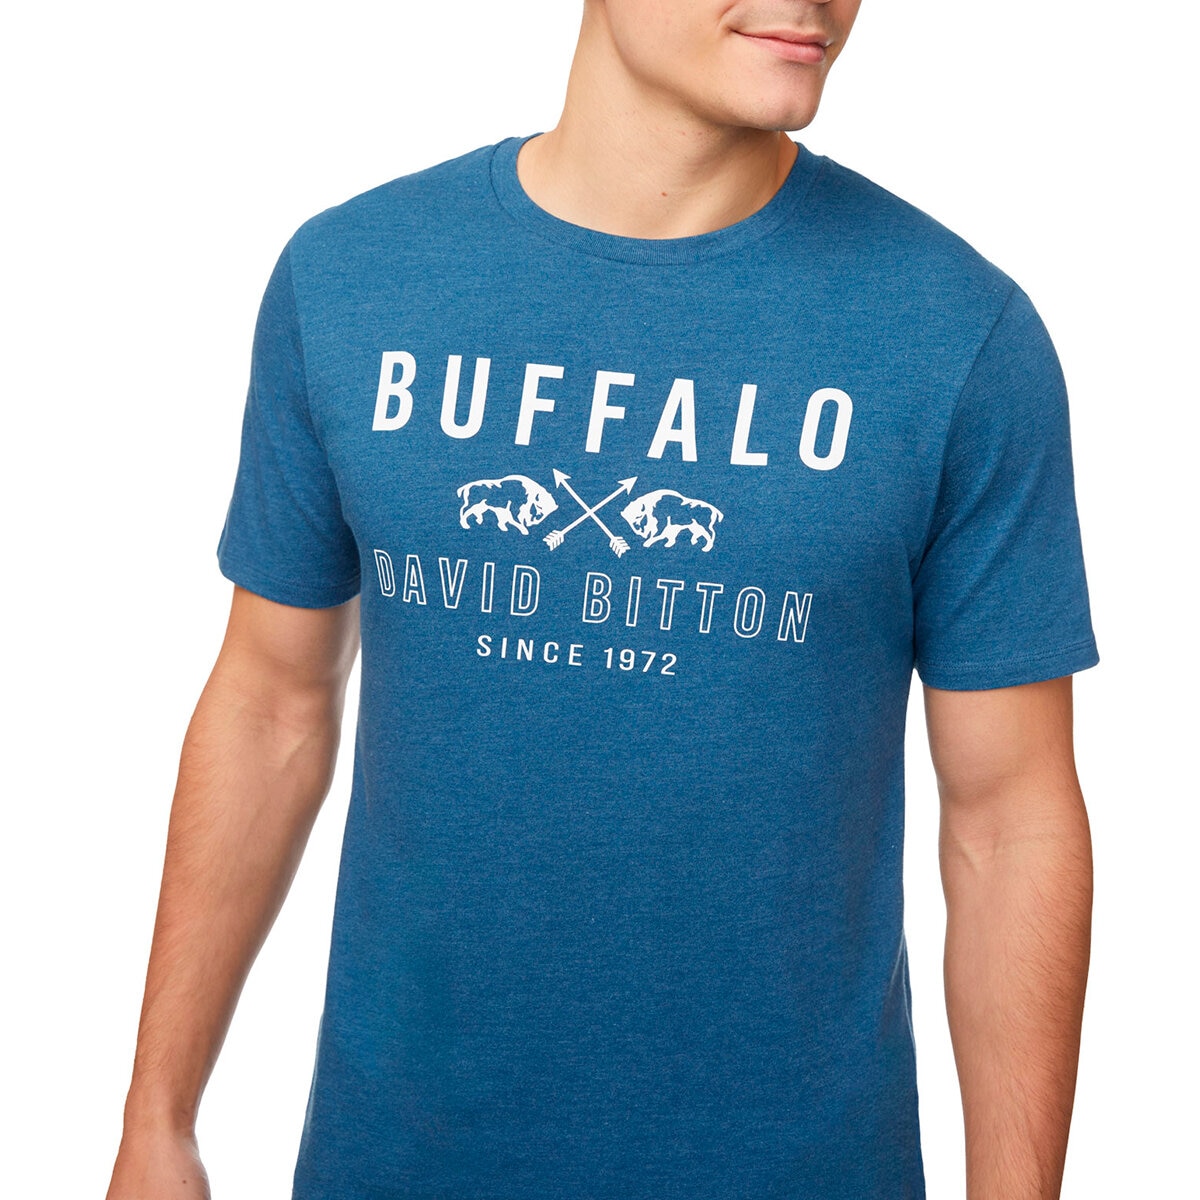 Buffalo David Bitton Playera para Caballero Azul